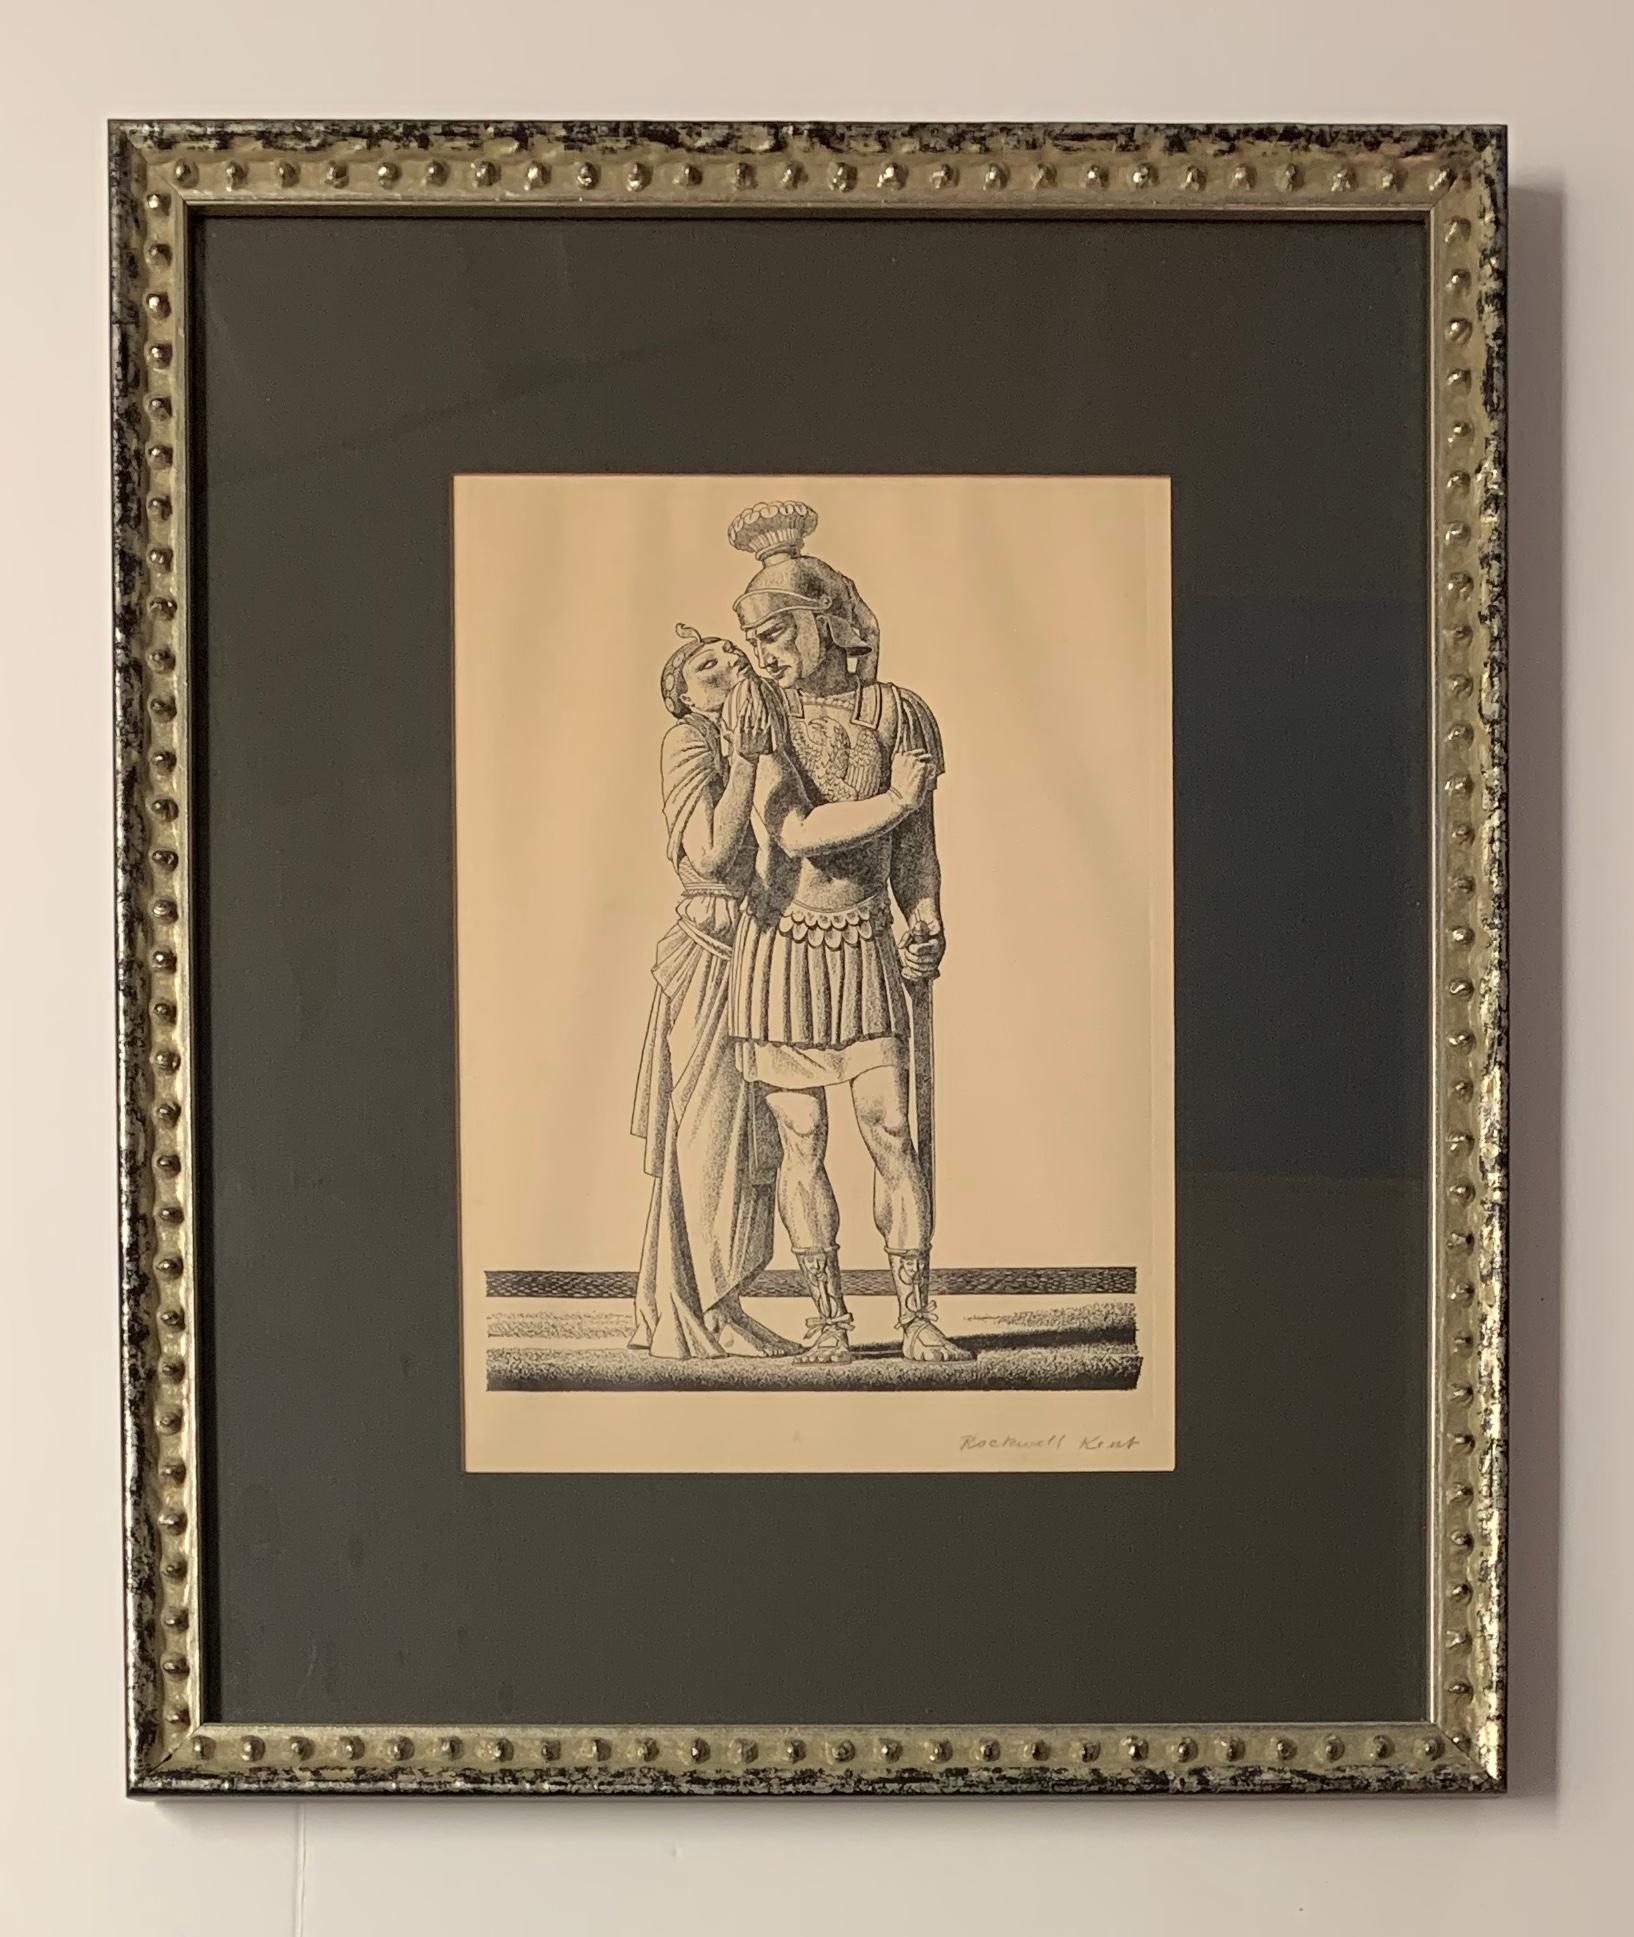 Mark Antony & Cleopatra  - Art Deco Print by Rockwell Kent